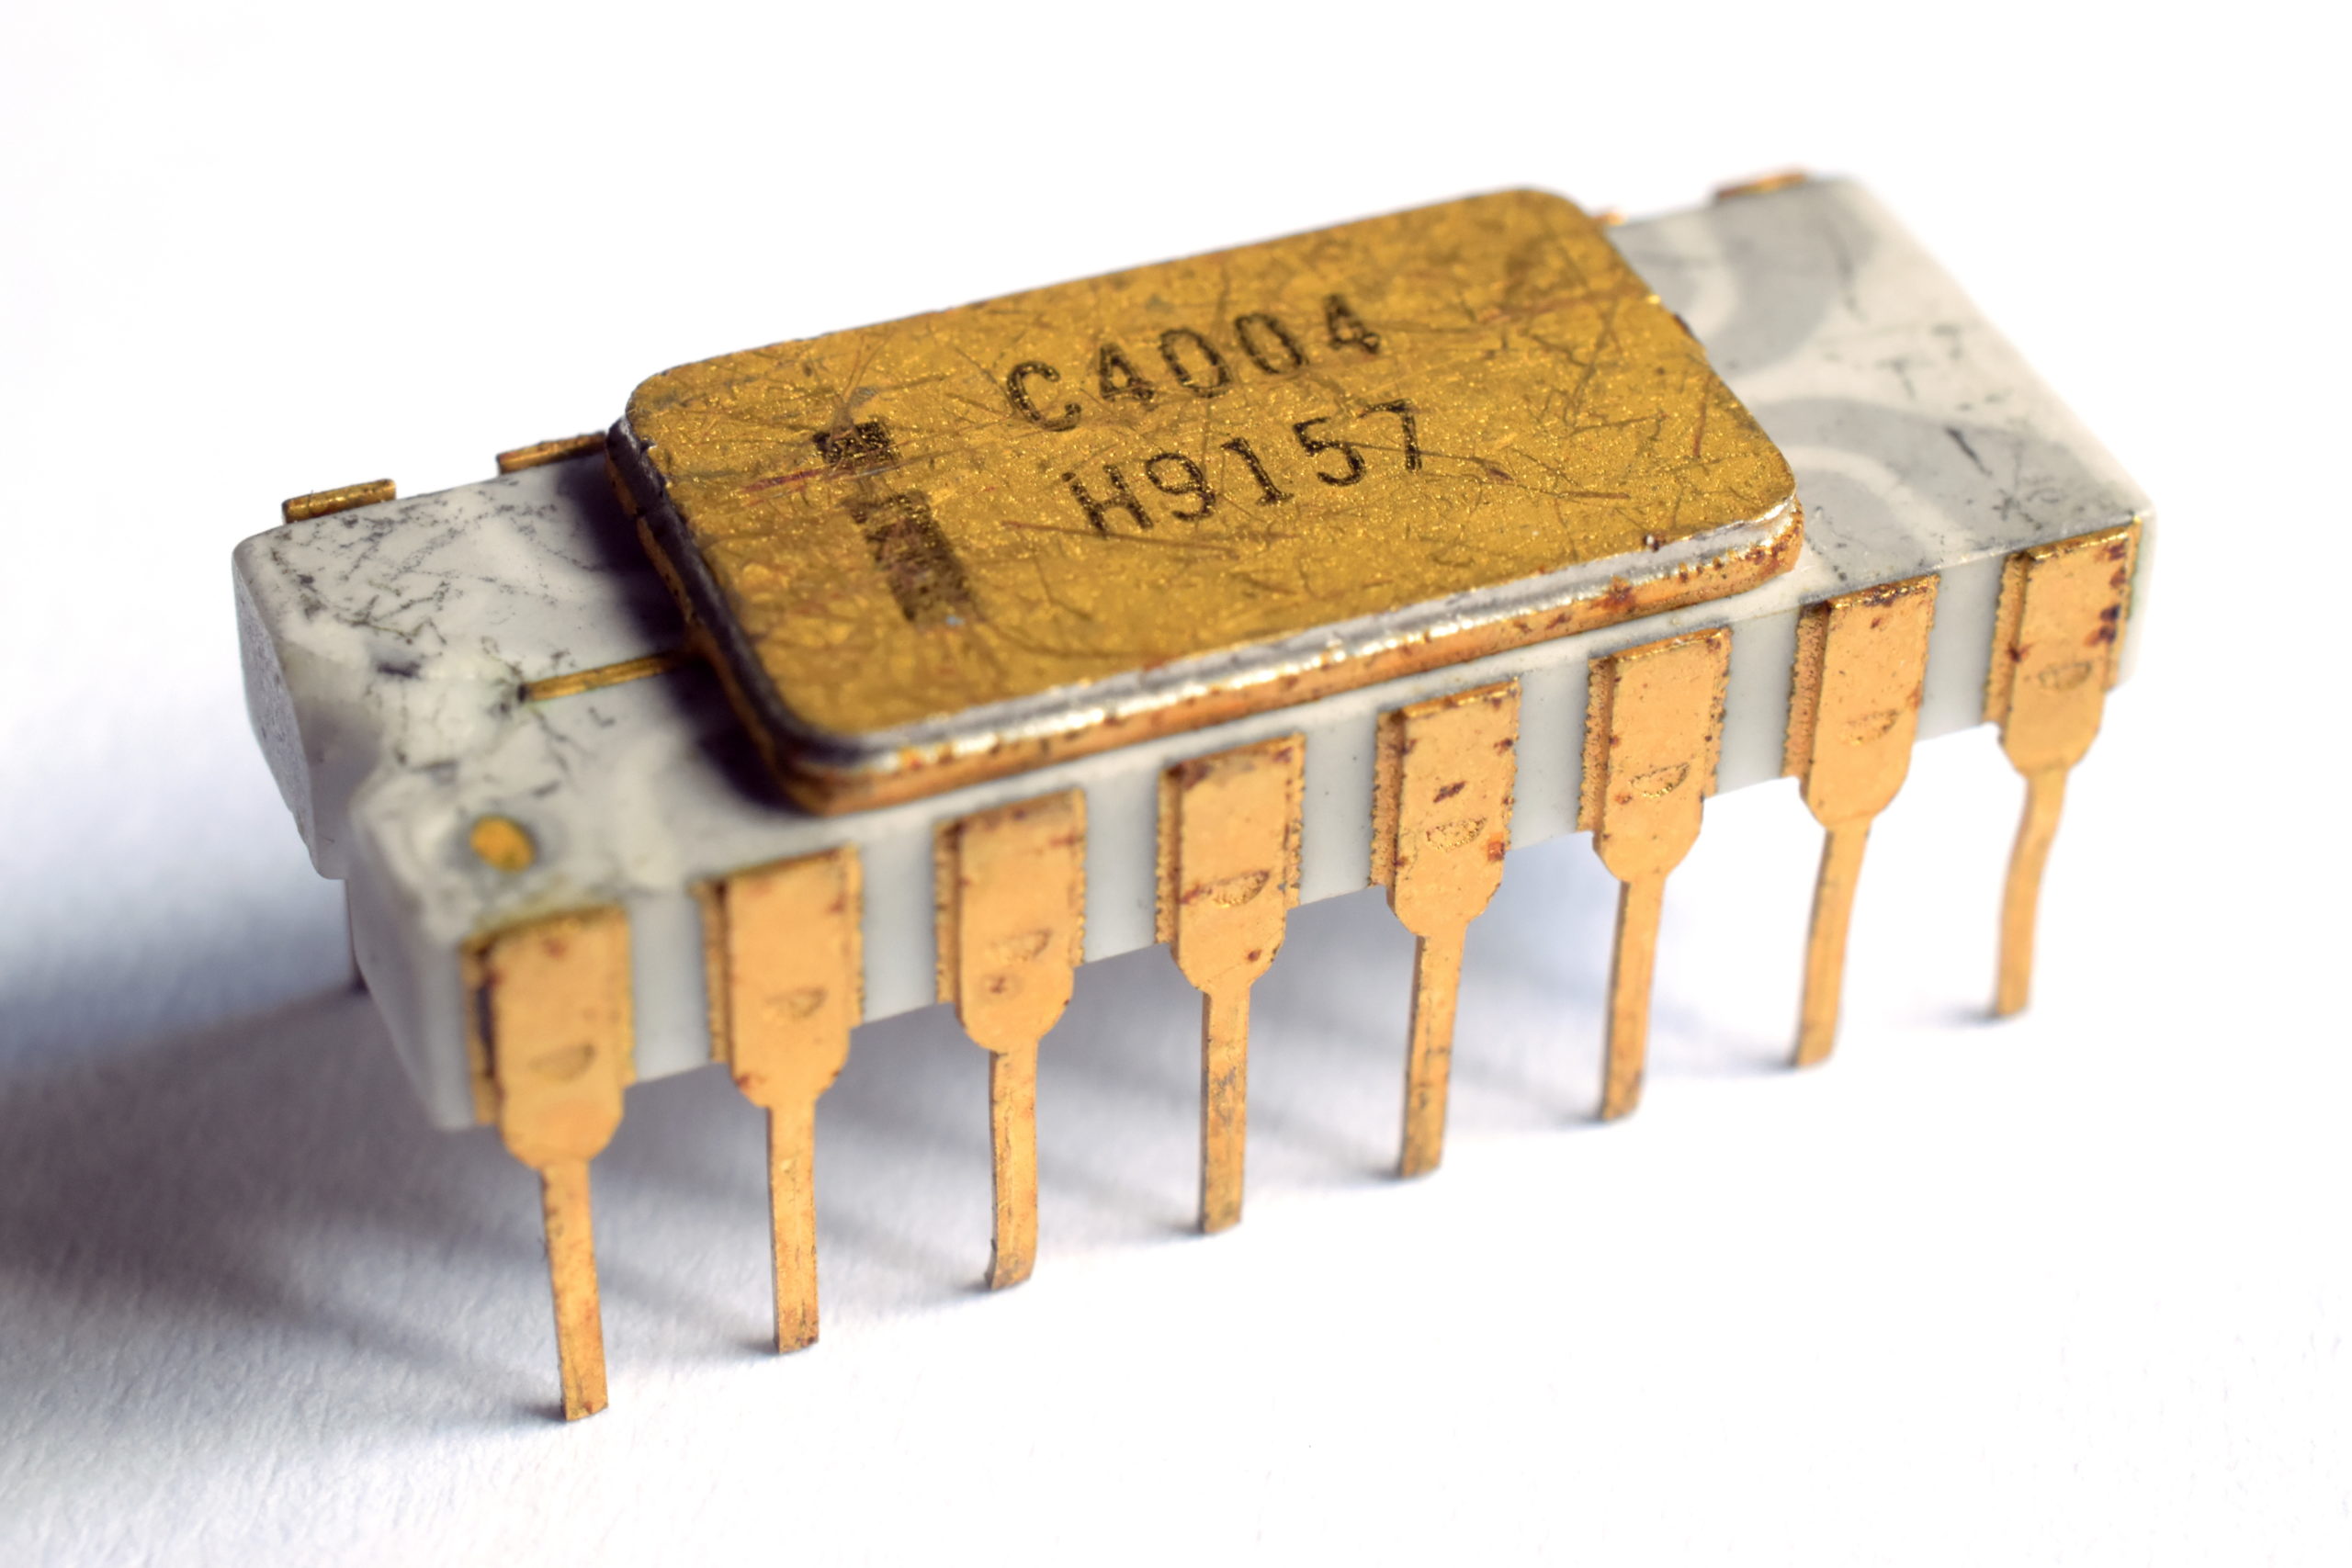 Na obrázku sa nachádza mikročip Intel C4004, ktorý spôsobil mikročipovú revolúciu.